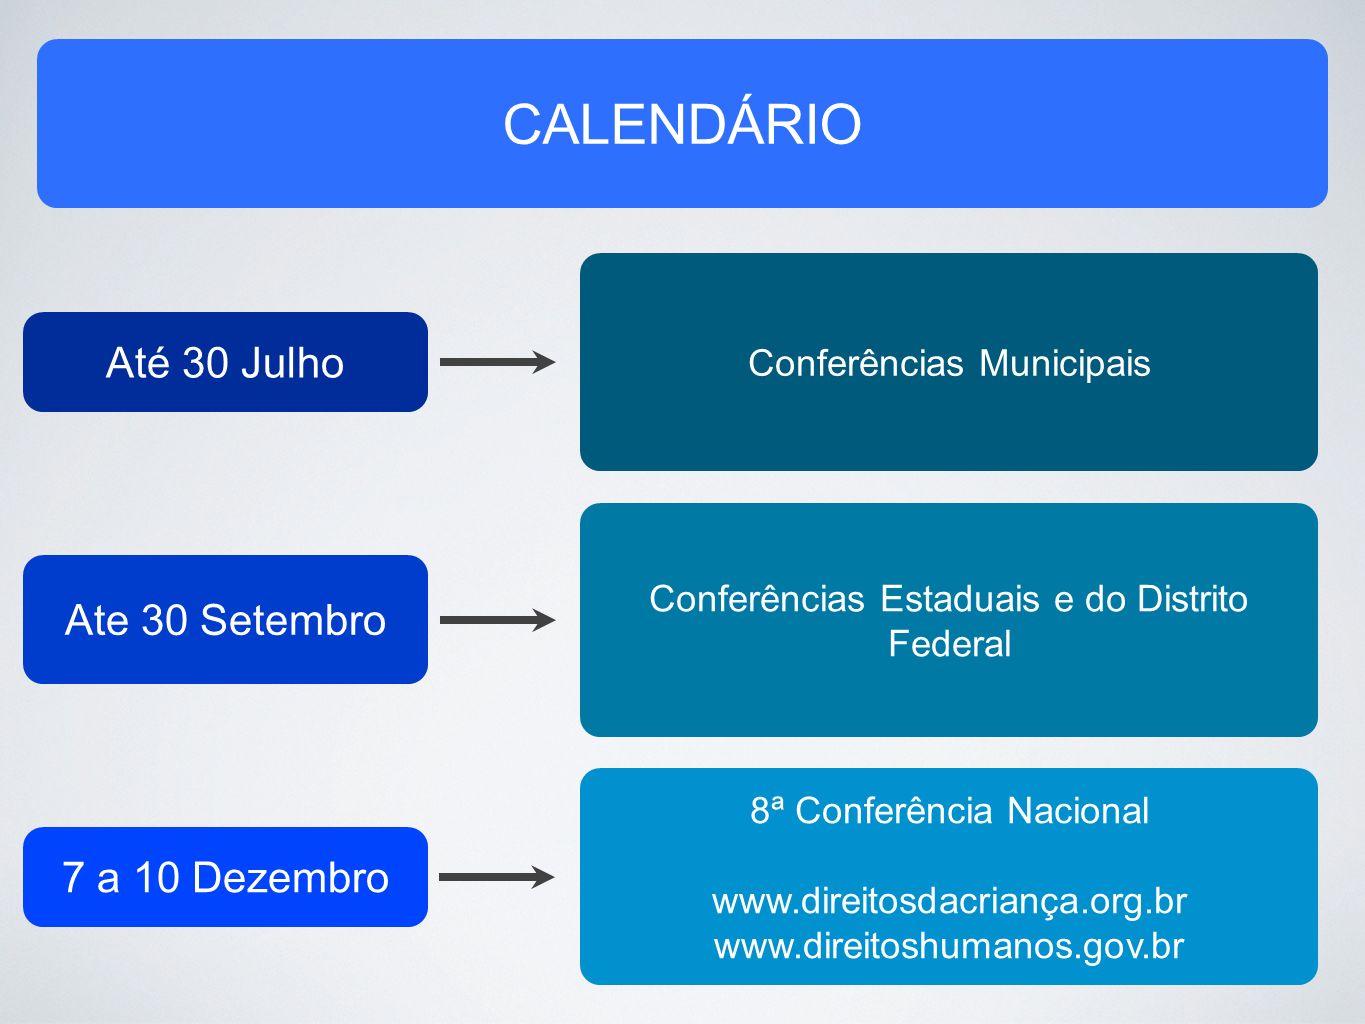 Até 30 Julho Conferências Municipais Ate 30 Setembro Conferências Estaduais e do Distrito Federal 7 a 10 Dezembro 8ª Conferência Nacional     CALENDÁRIO